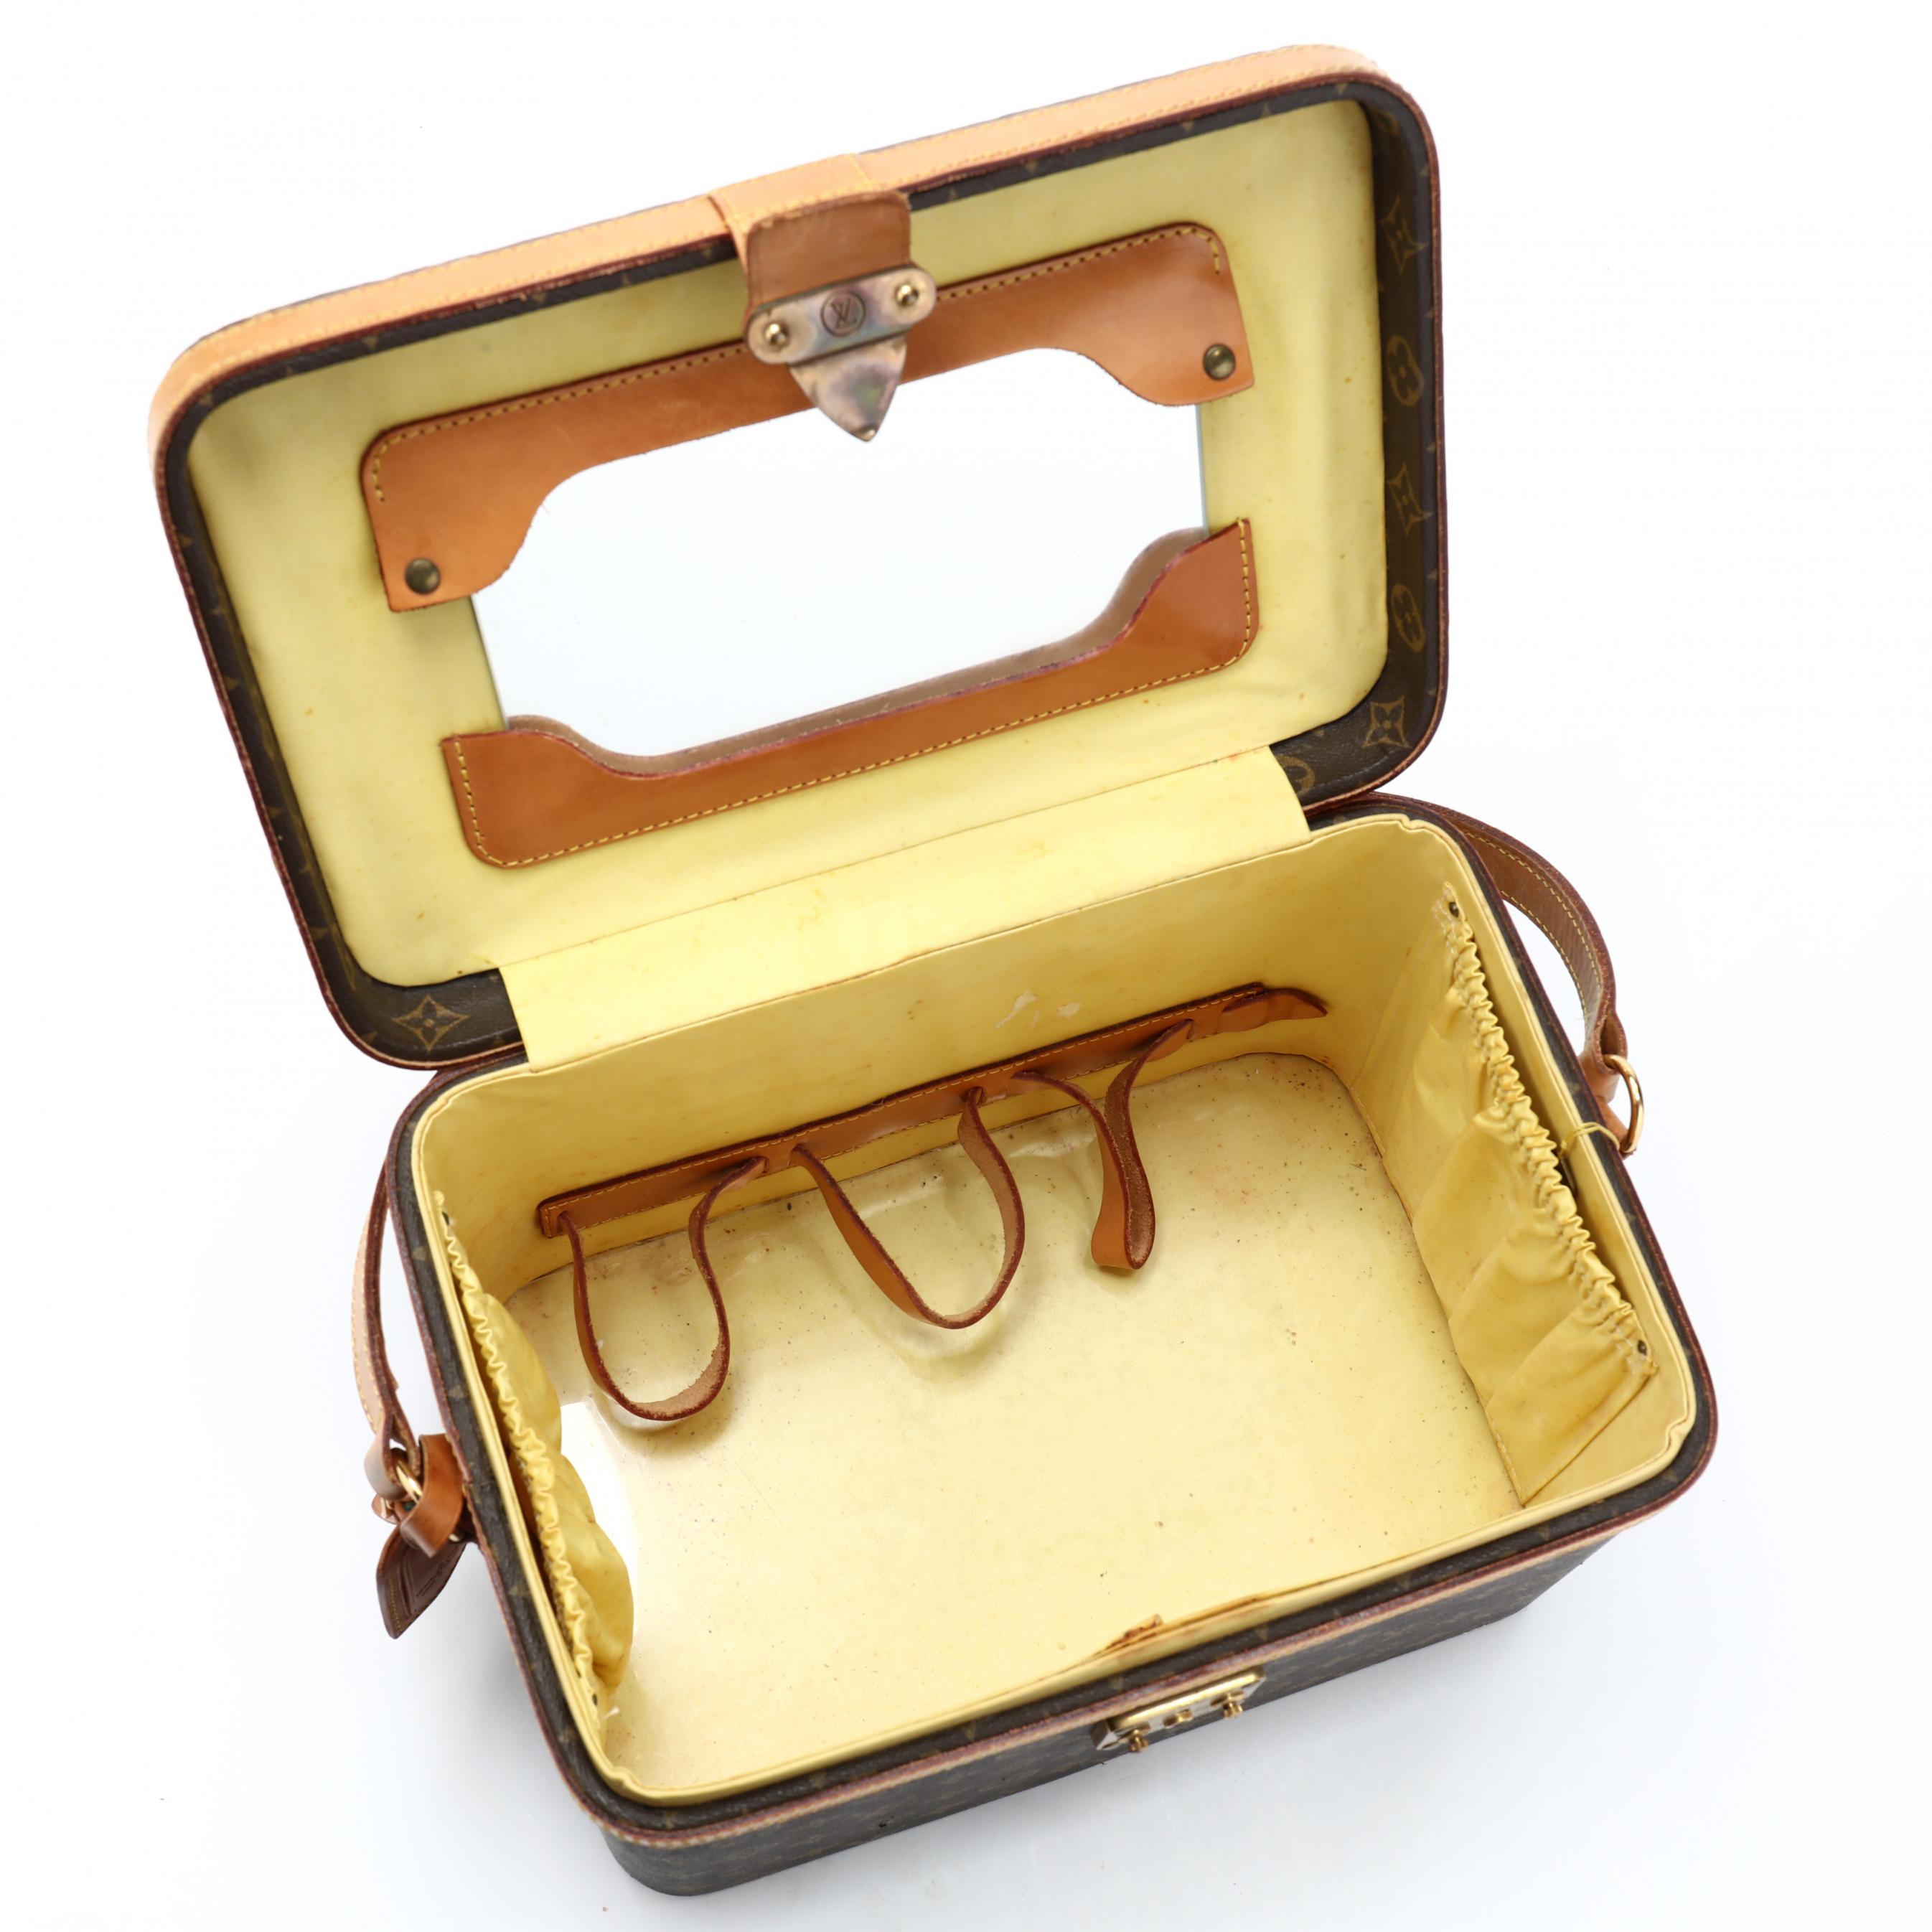 Sold at Auction: Louis Vuitton Vintage Monogram Jewelry Train Case